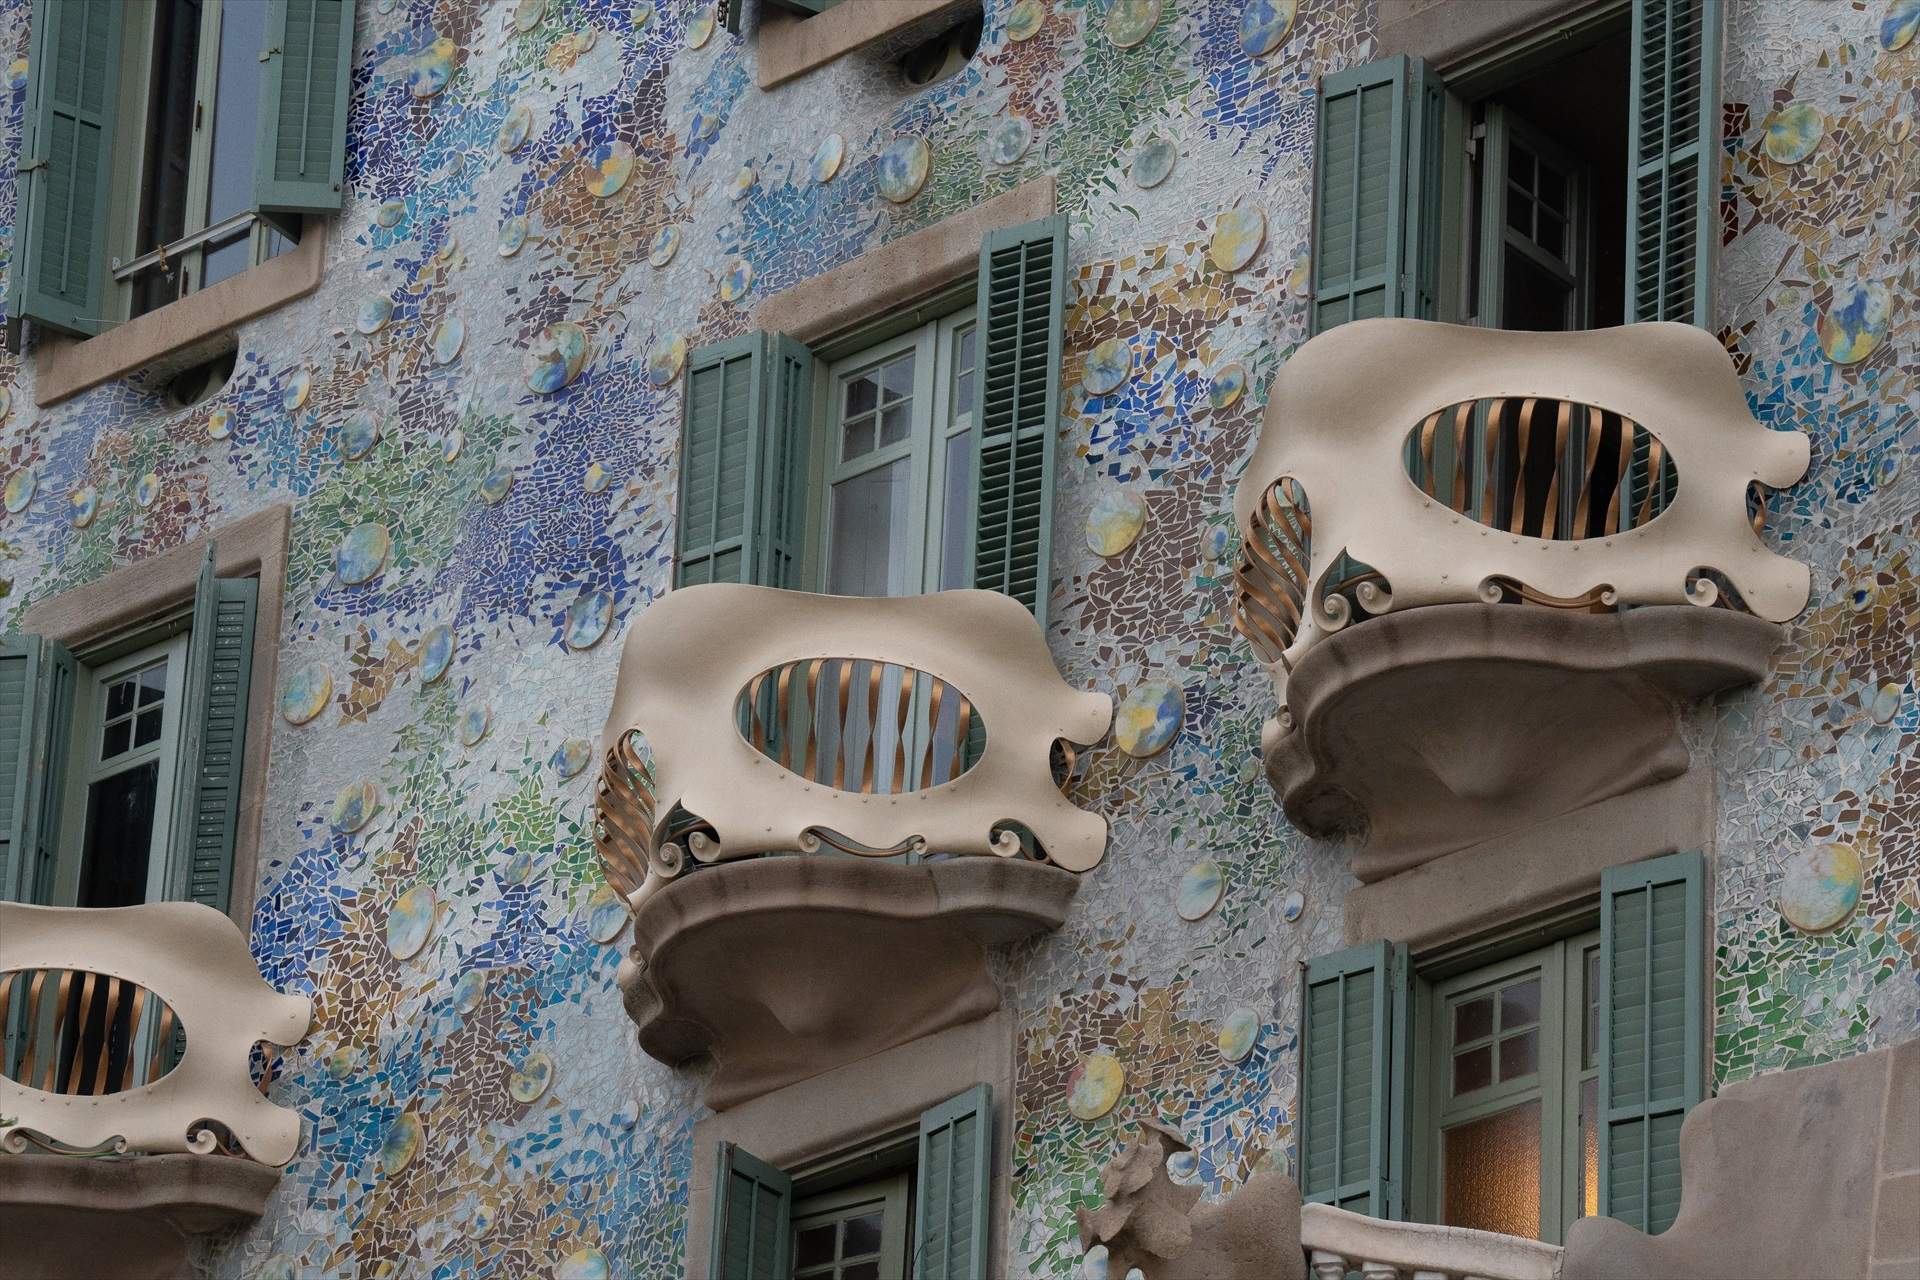 La Casa Batlló, uno de los monumentos más visitados de Barcelona, duplica beneficios